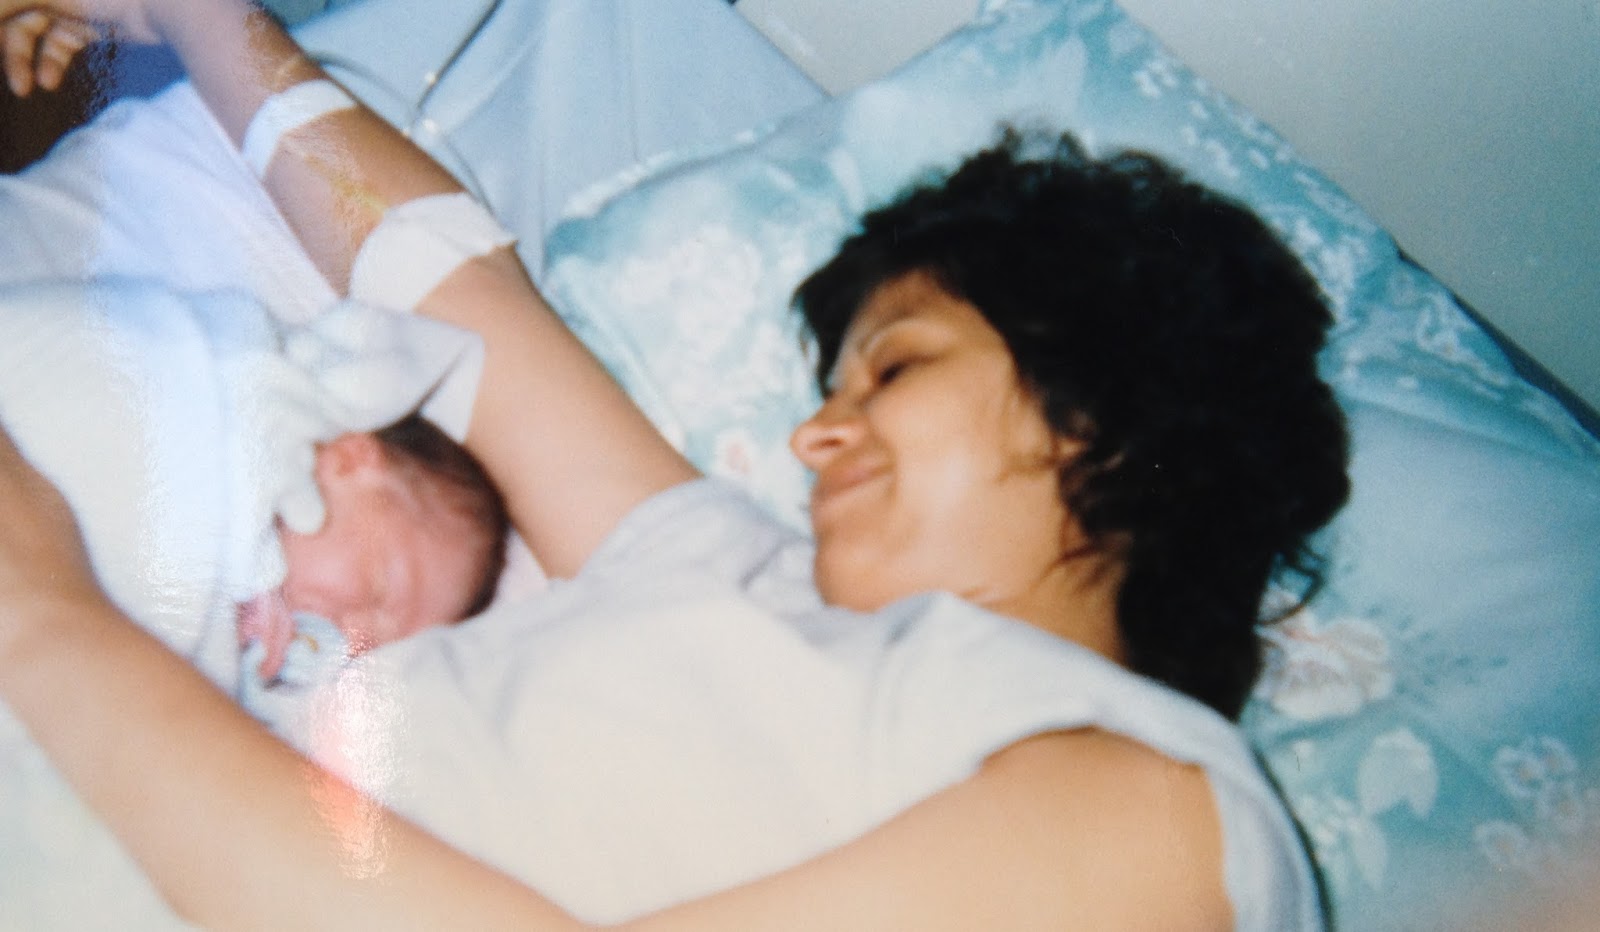 Foto minha de recém-nascido, eu e minha mãe ainda na maternidade.